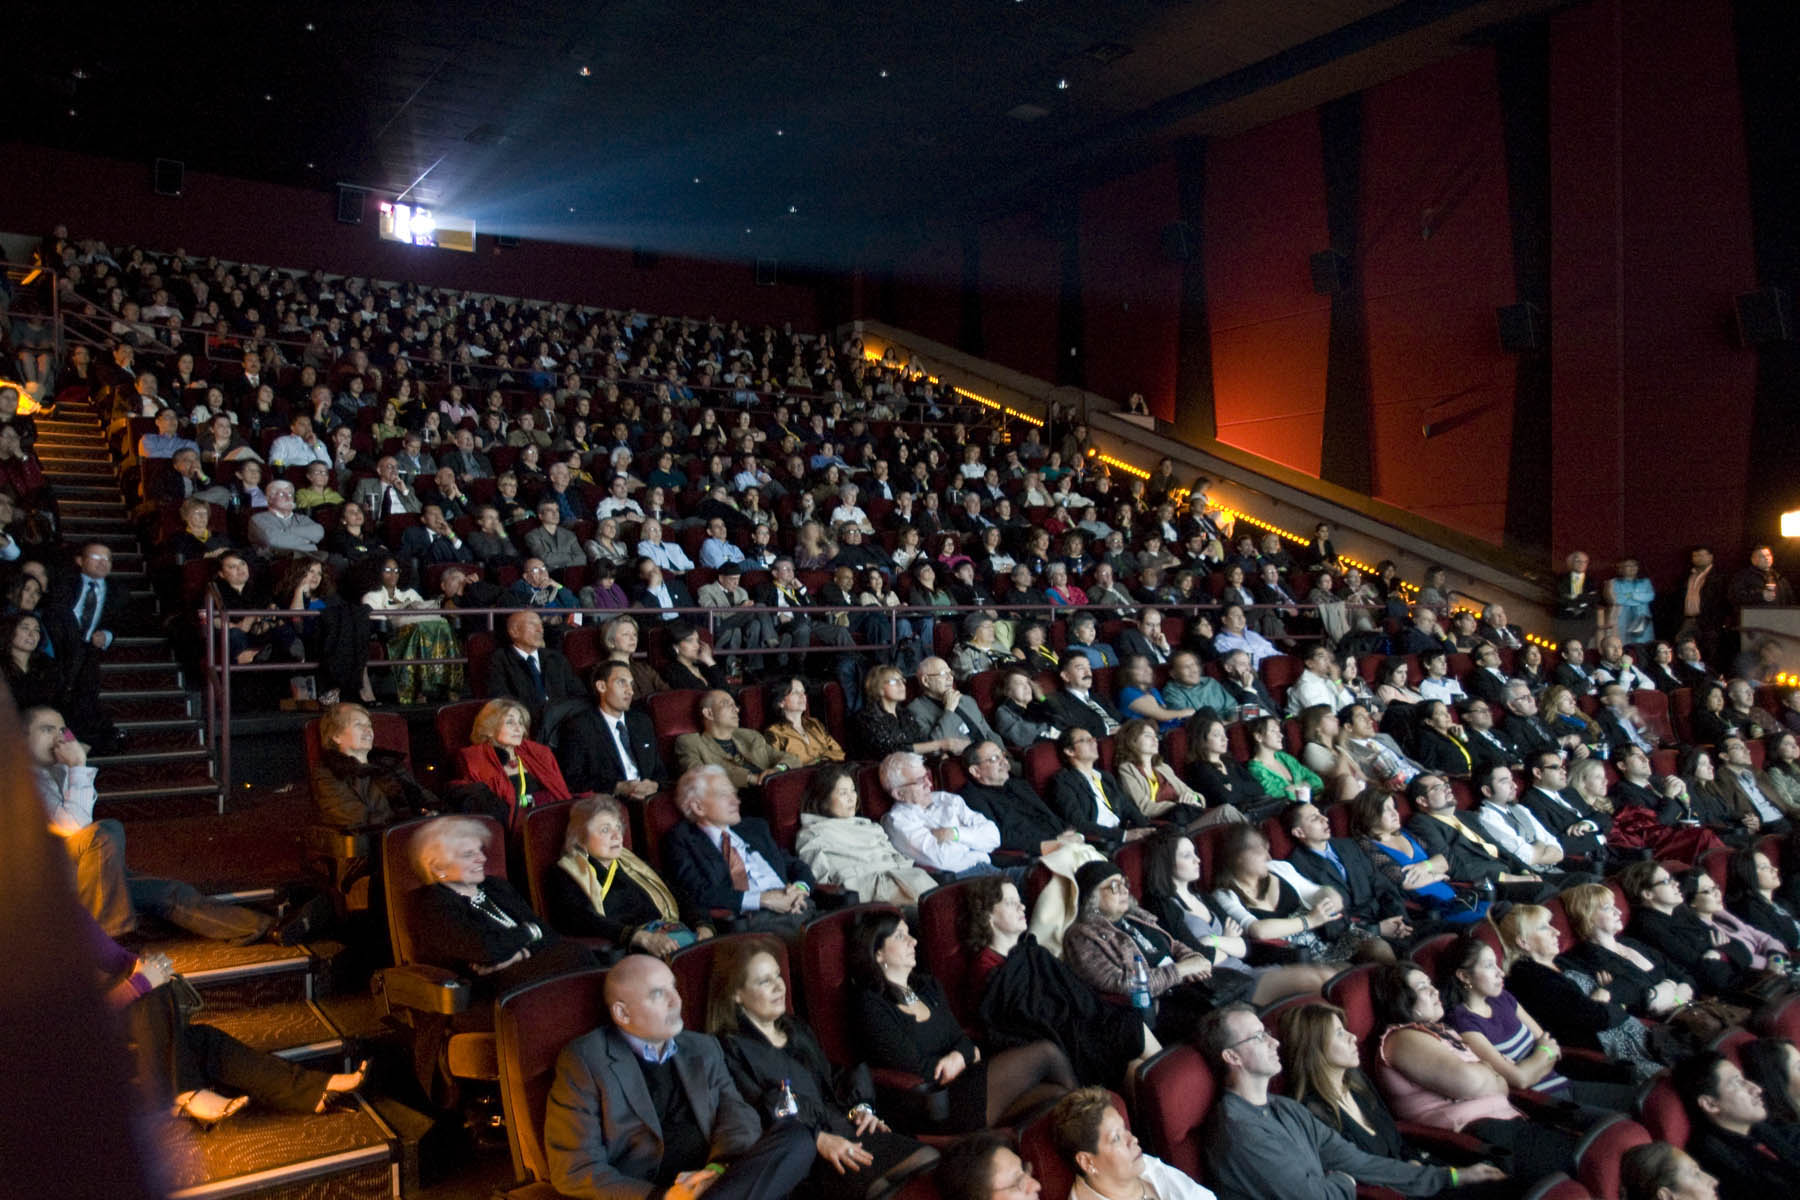 Se promueven en salas de cine la prevención de drogas